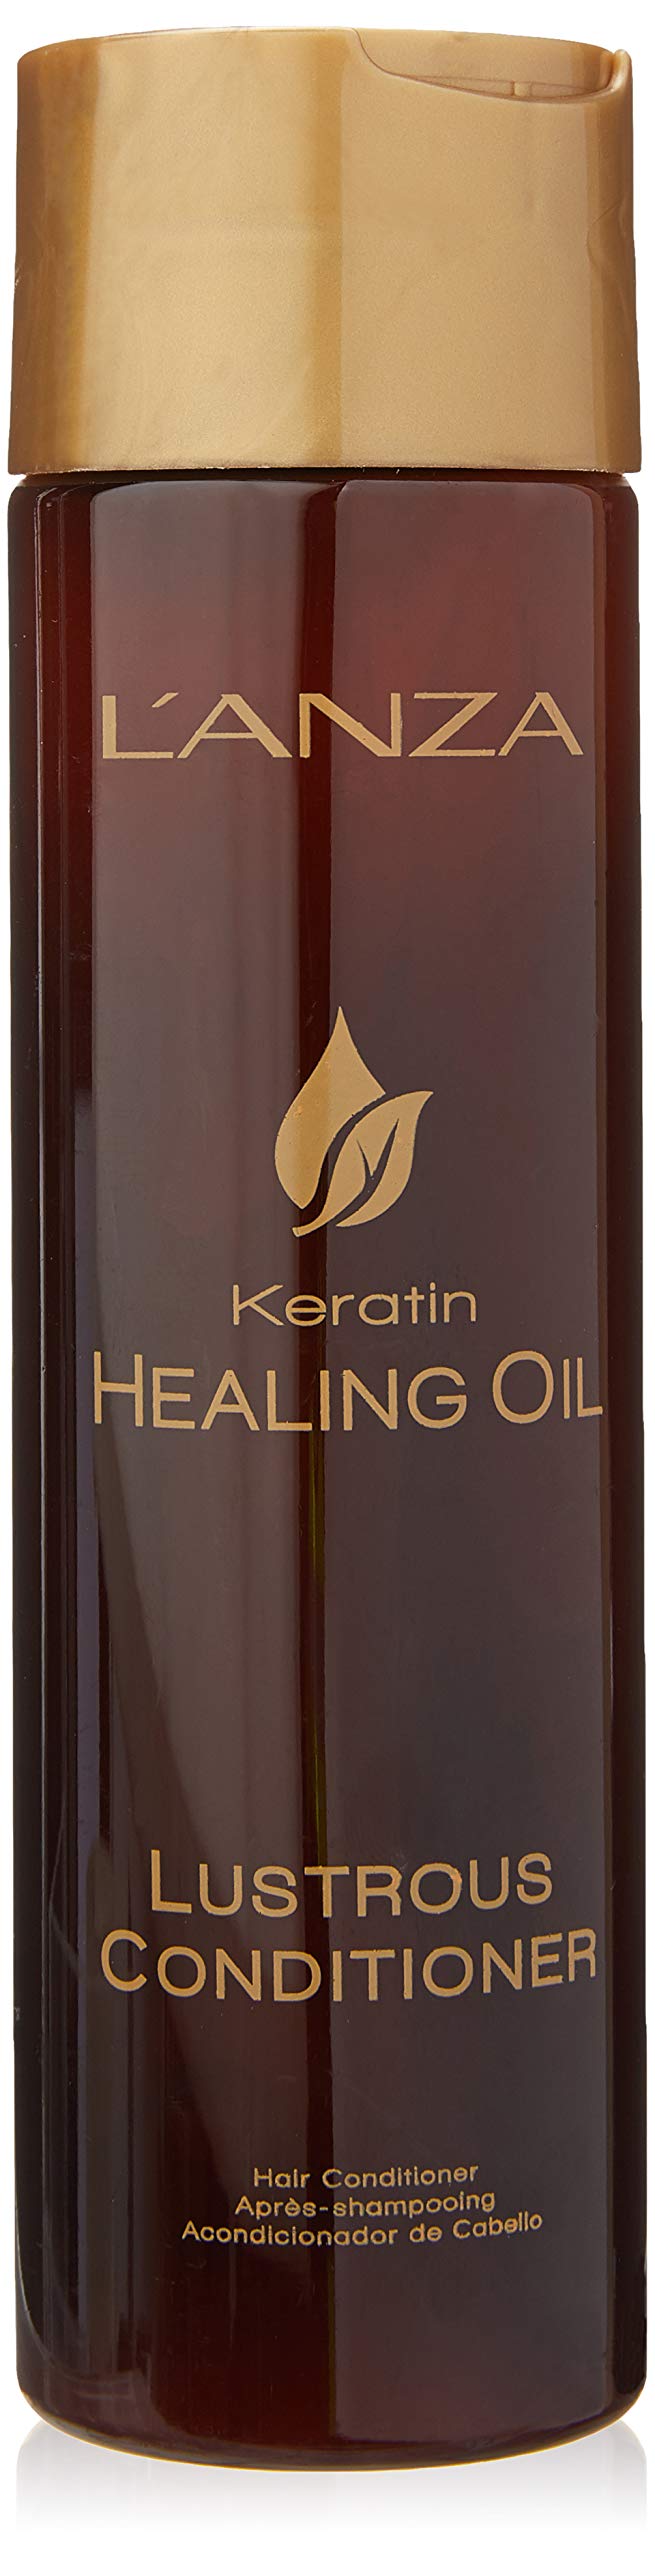 [Australia] - L'ANZA Keratin Healing Oil Conditioner 250 ml 